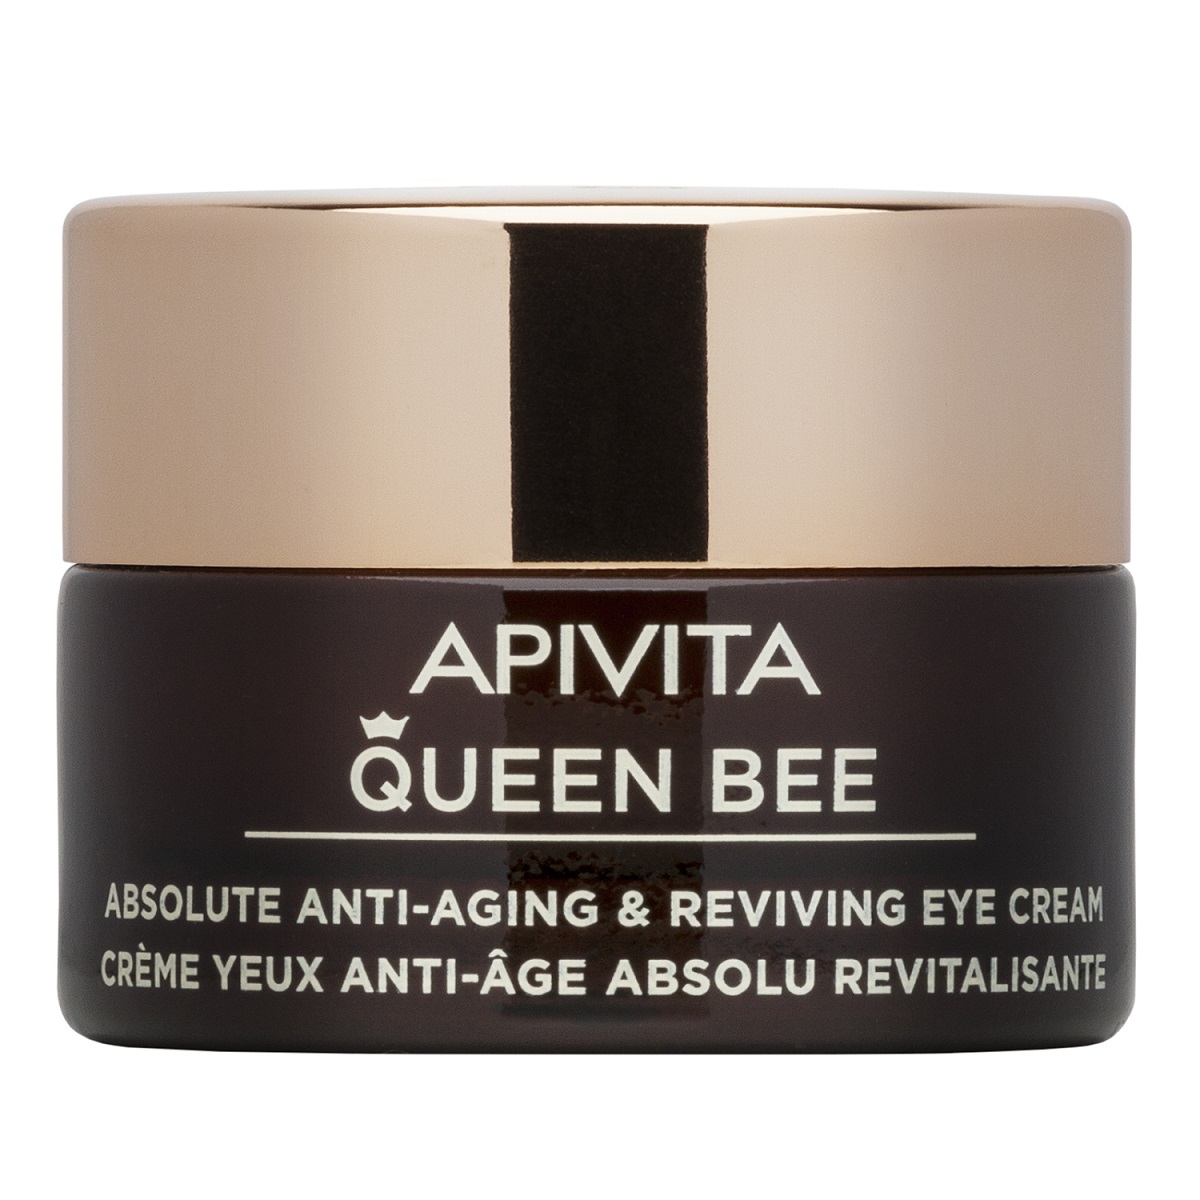 Apivita Комплексный антивозрастной восстанавливающий крем для кожи контура глаз, 15 мл (Apivita, Queen Bee)